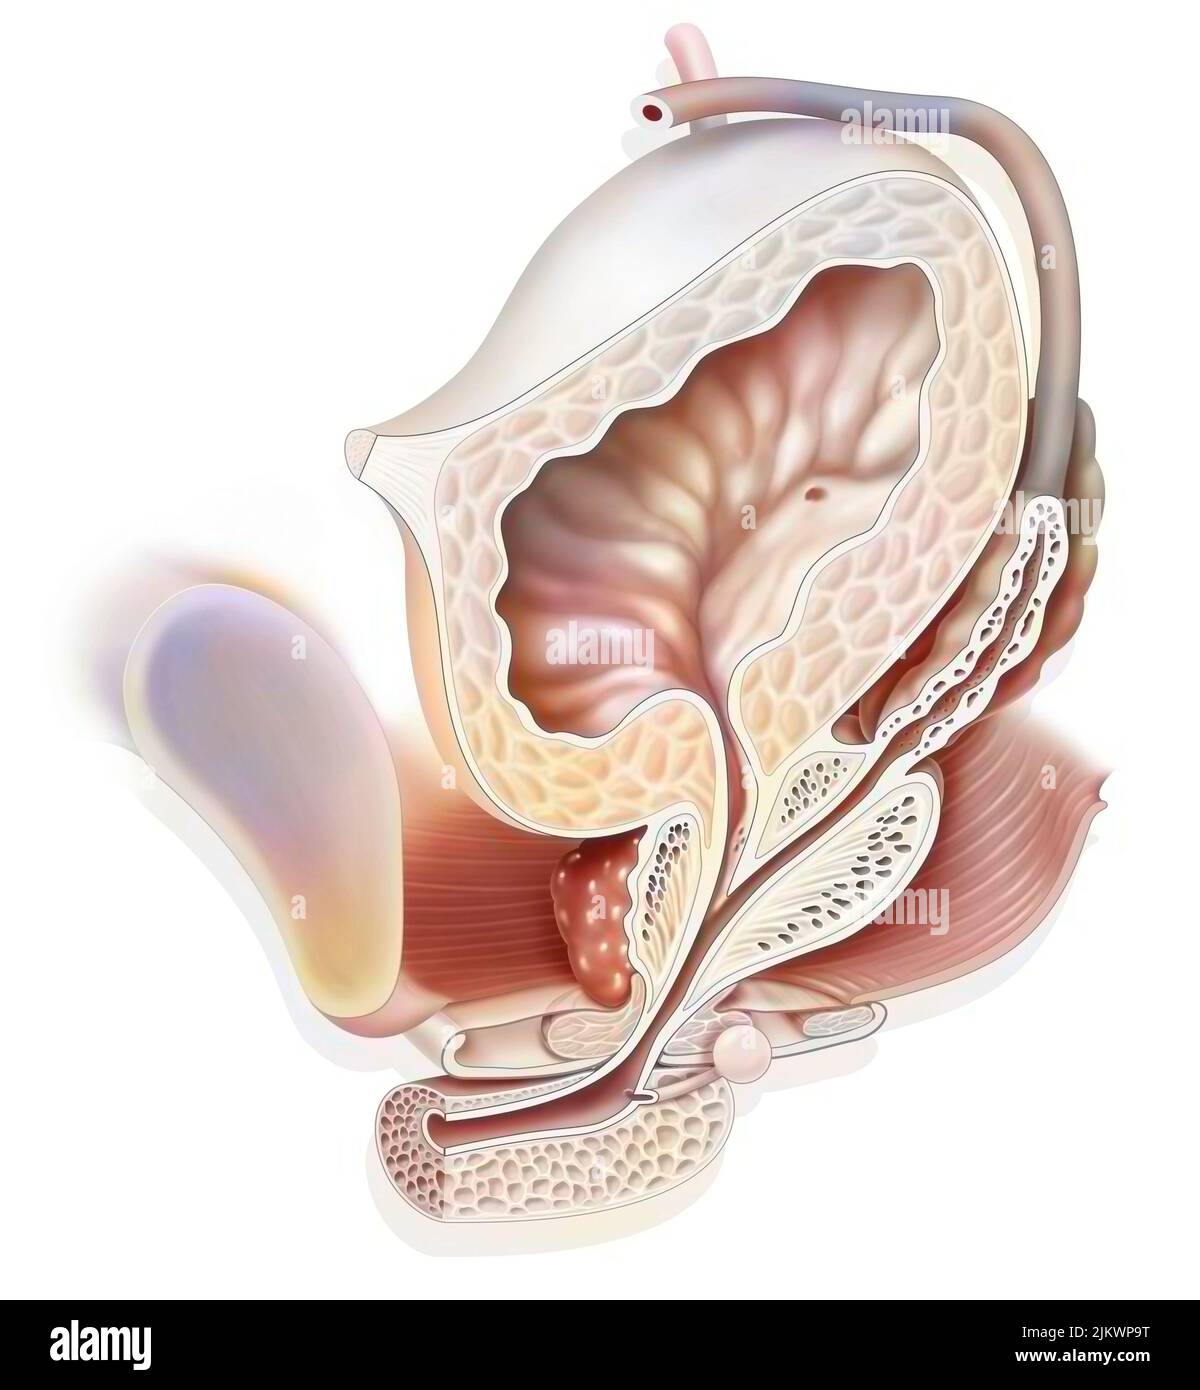 Anatomie des männlichen Urogenitalsystems mit Harnleiter, Blase. Stockfoto